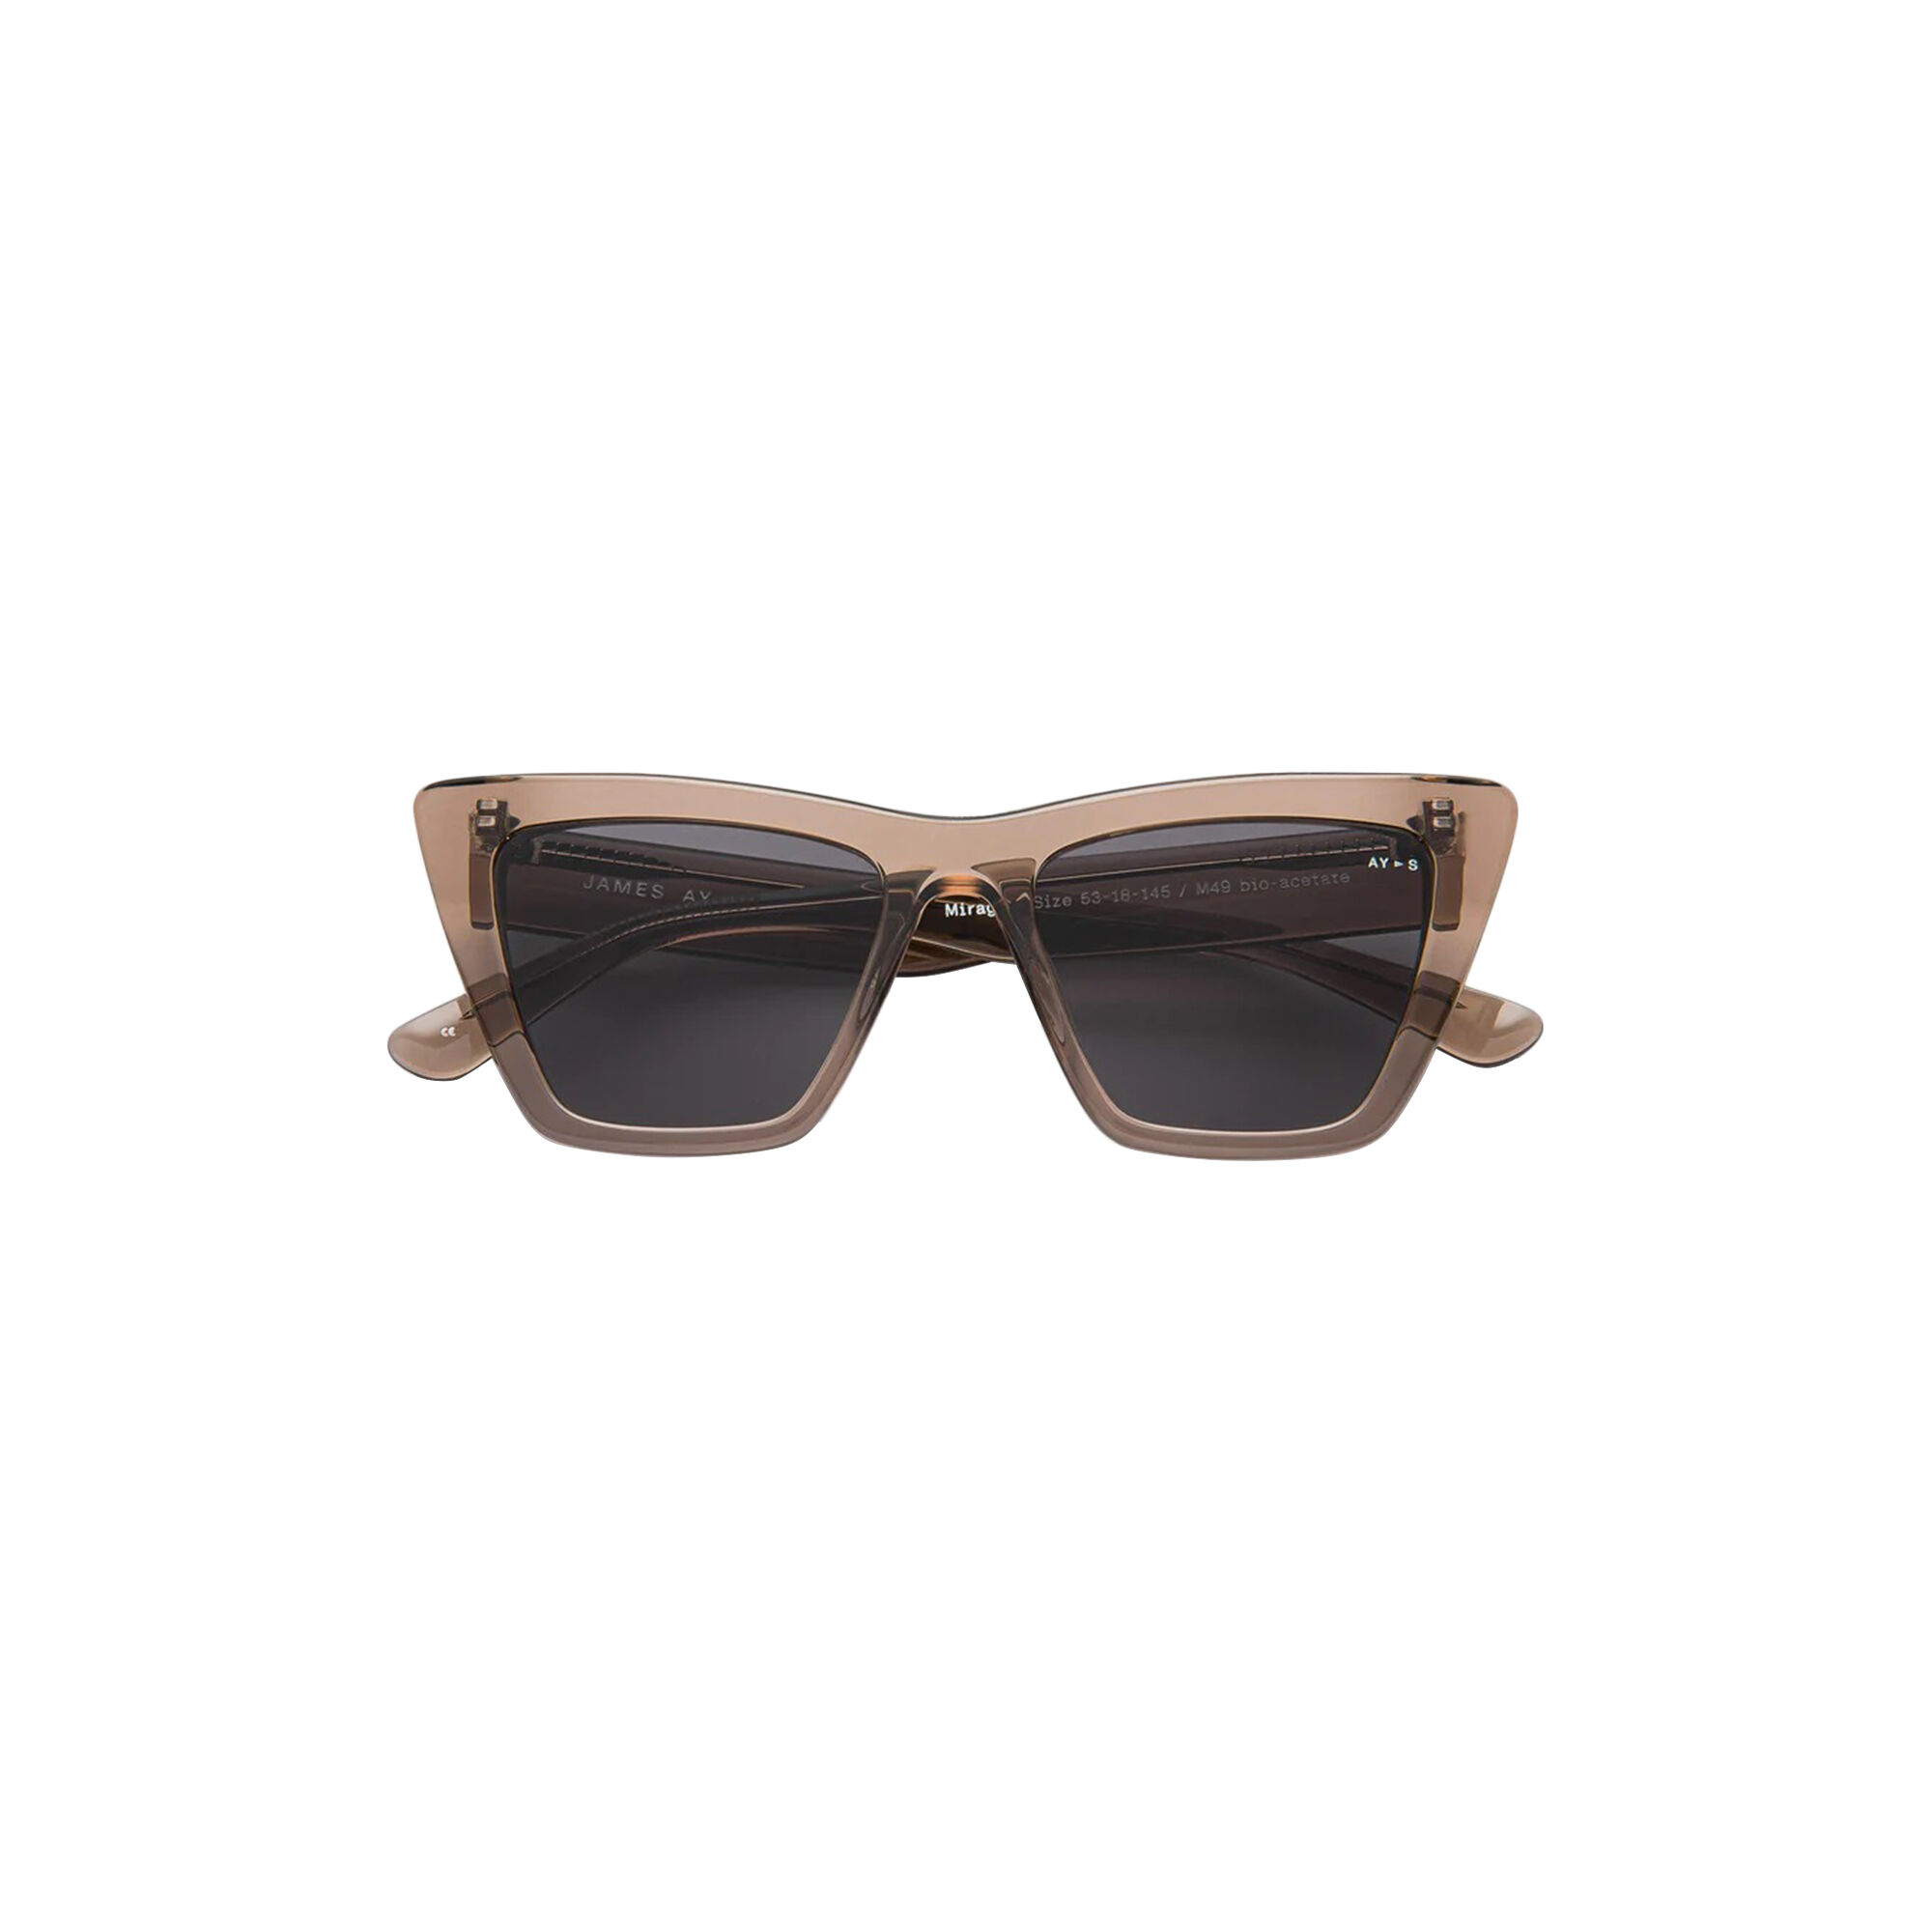 MESSYWEEKEND | New Depp Sunglasses | Coffee Brown | LONDØNWORKS